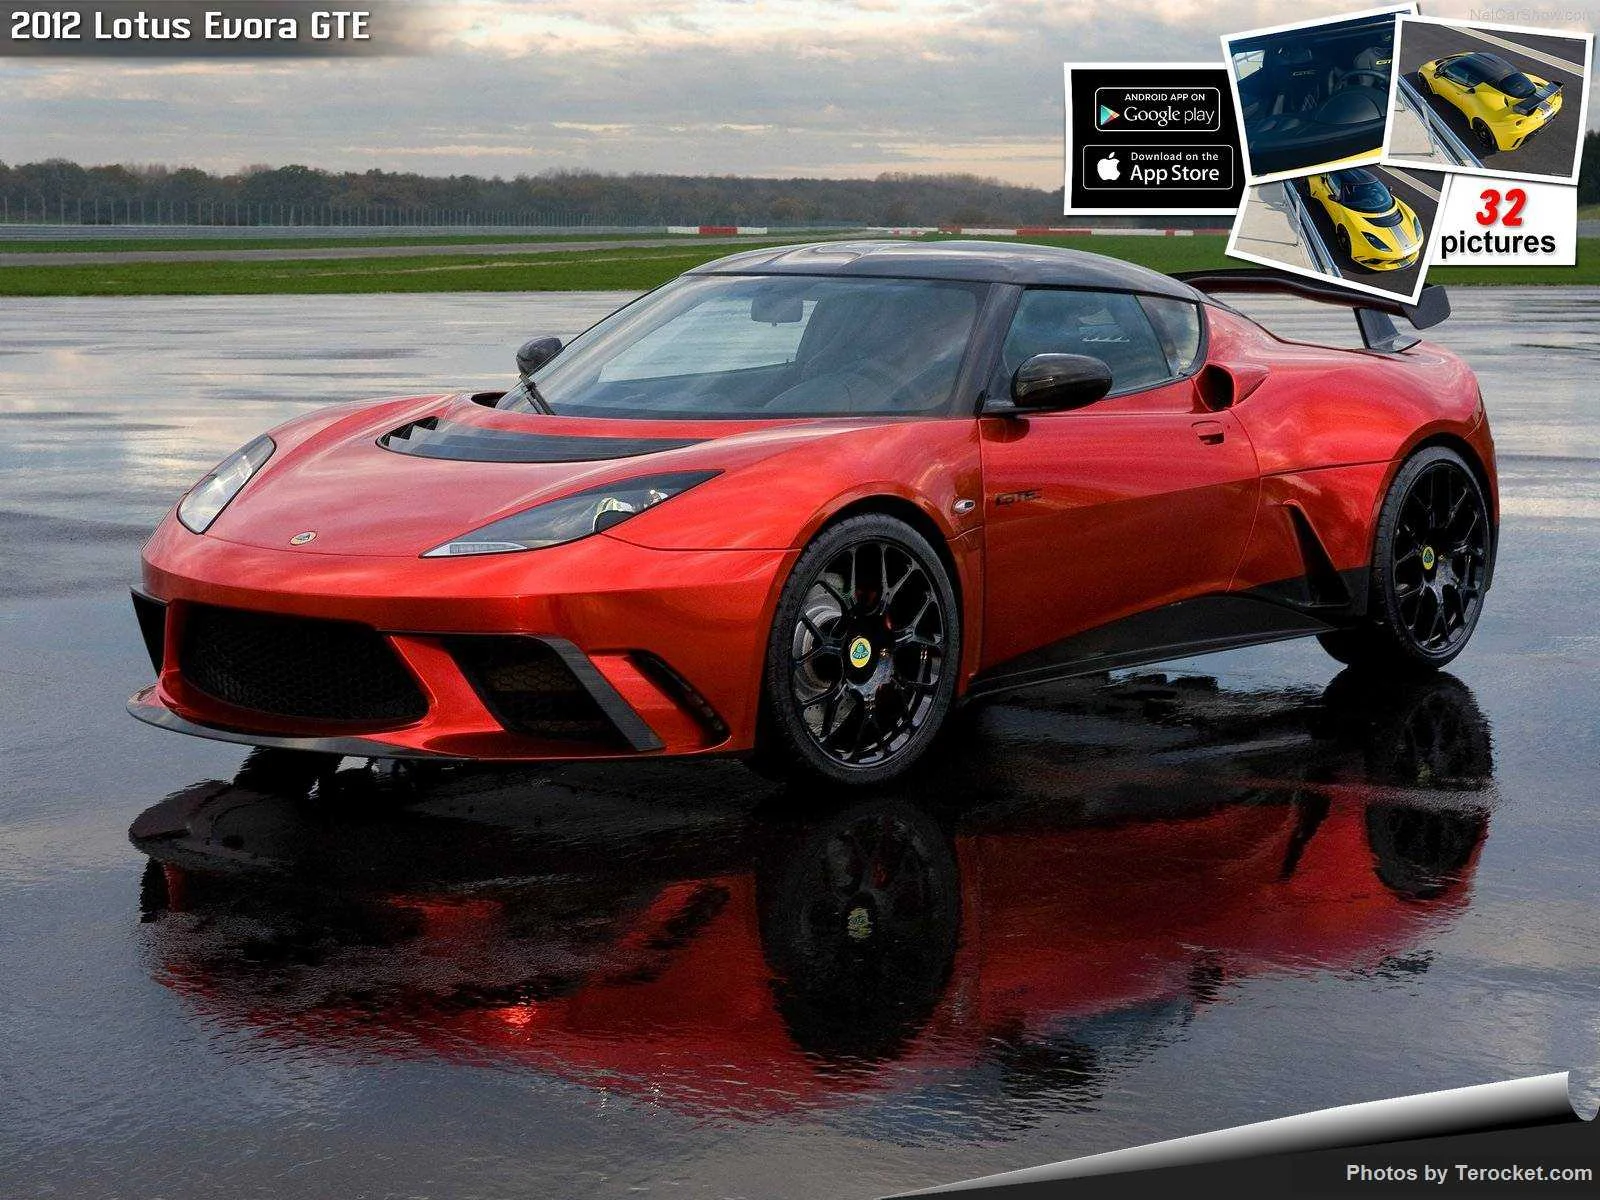 Hình ảnh siêu xe Lotus Evora GTE 2012 & nội ngoại thất